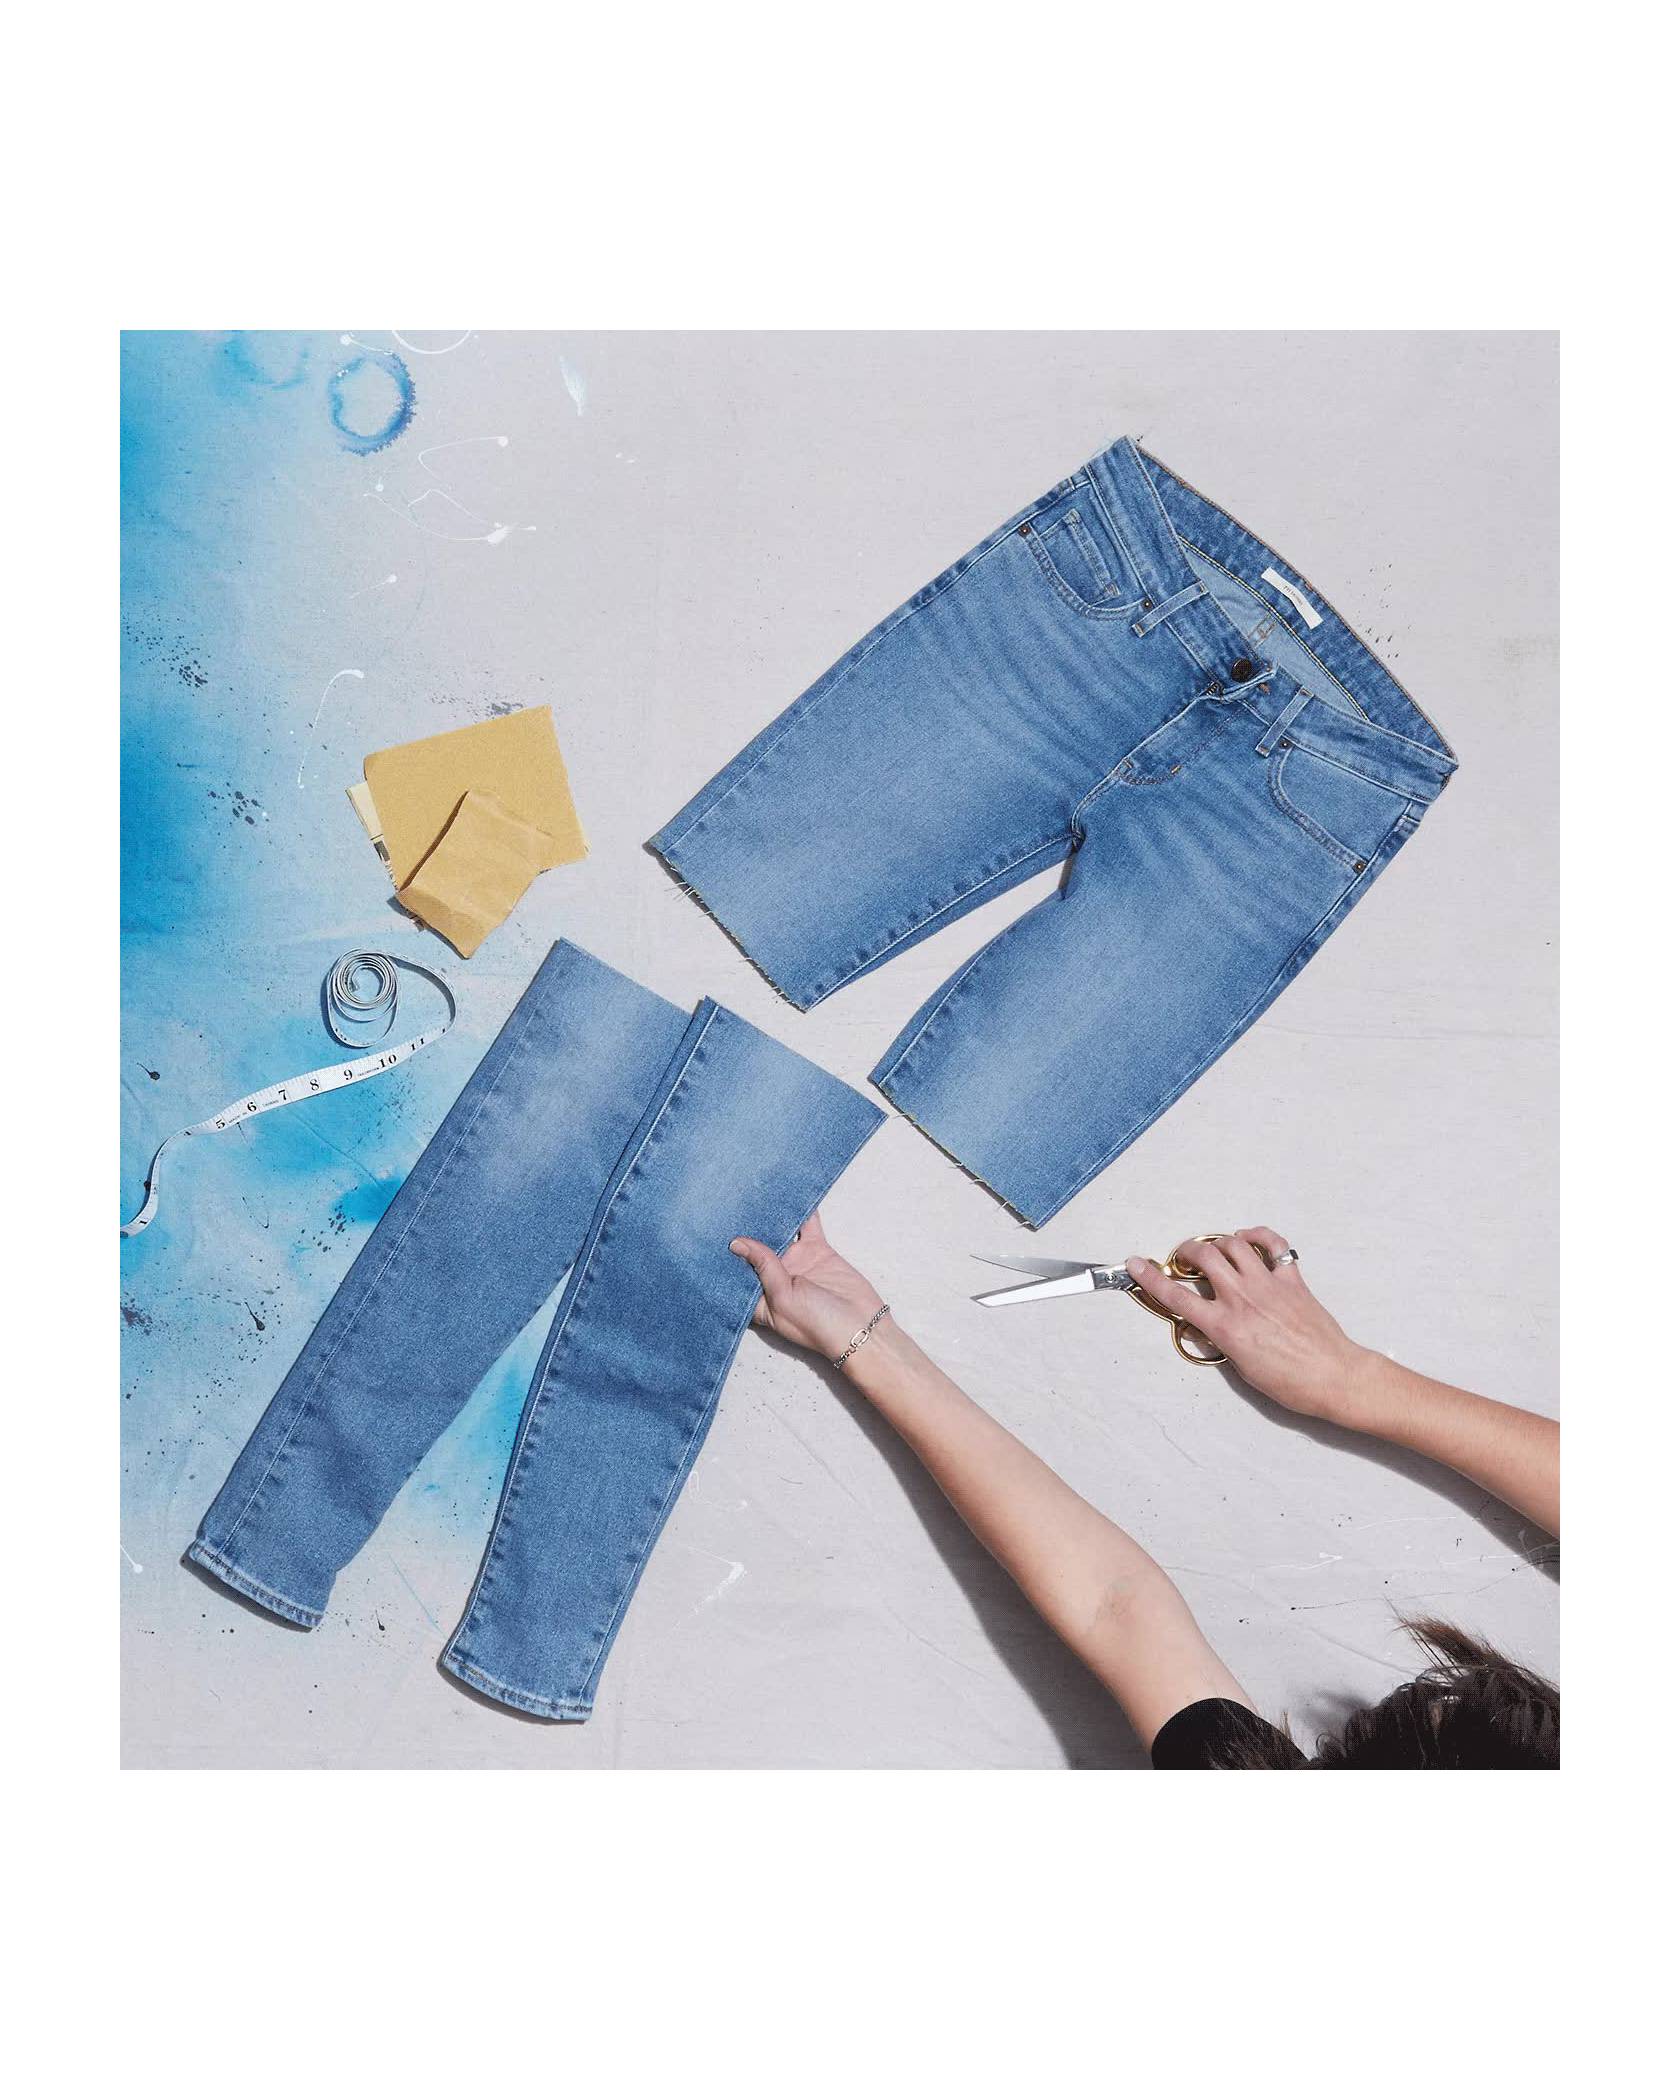 DIY Shorts - Make Perfect Cut Off Jean Shorts